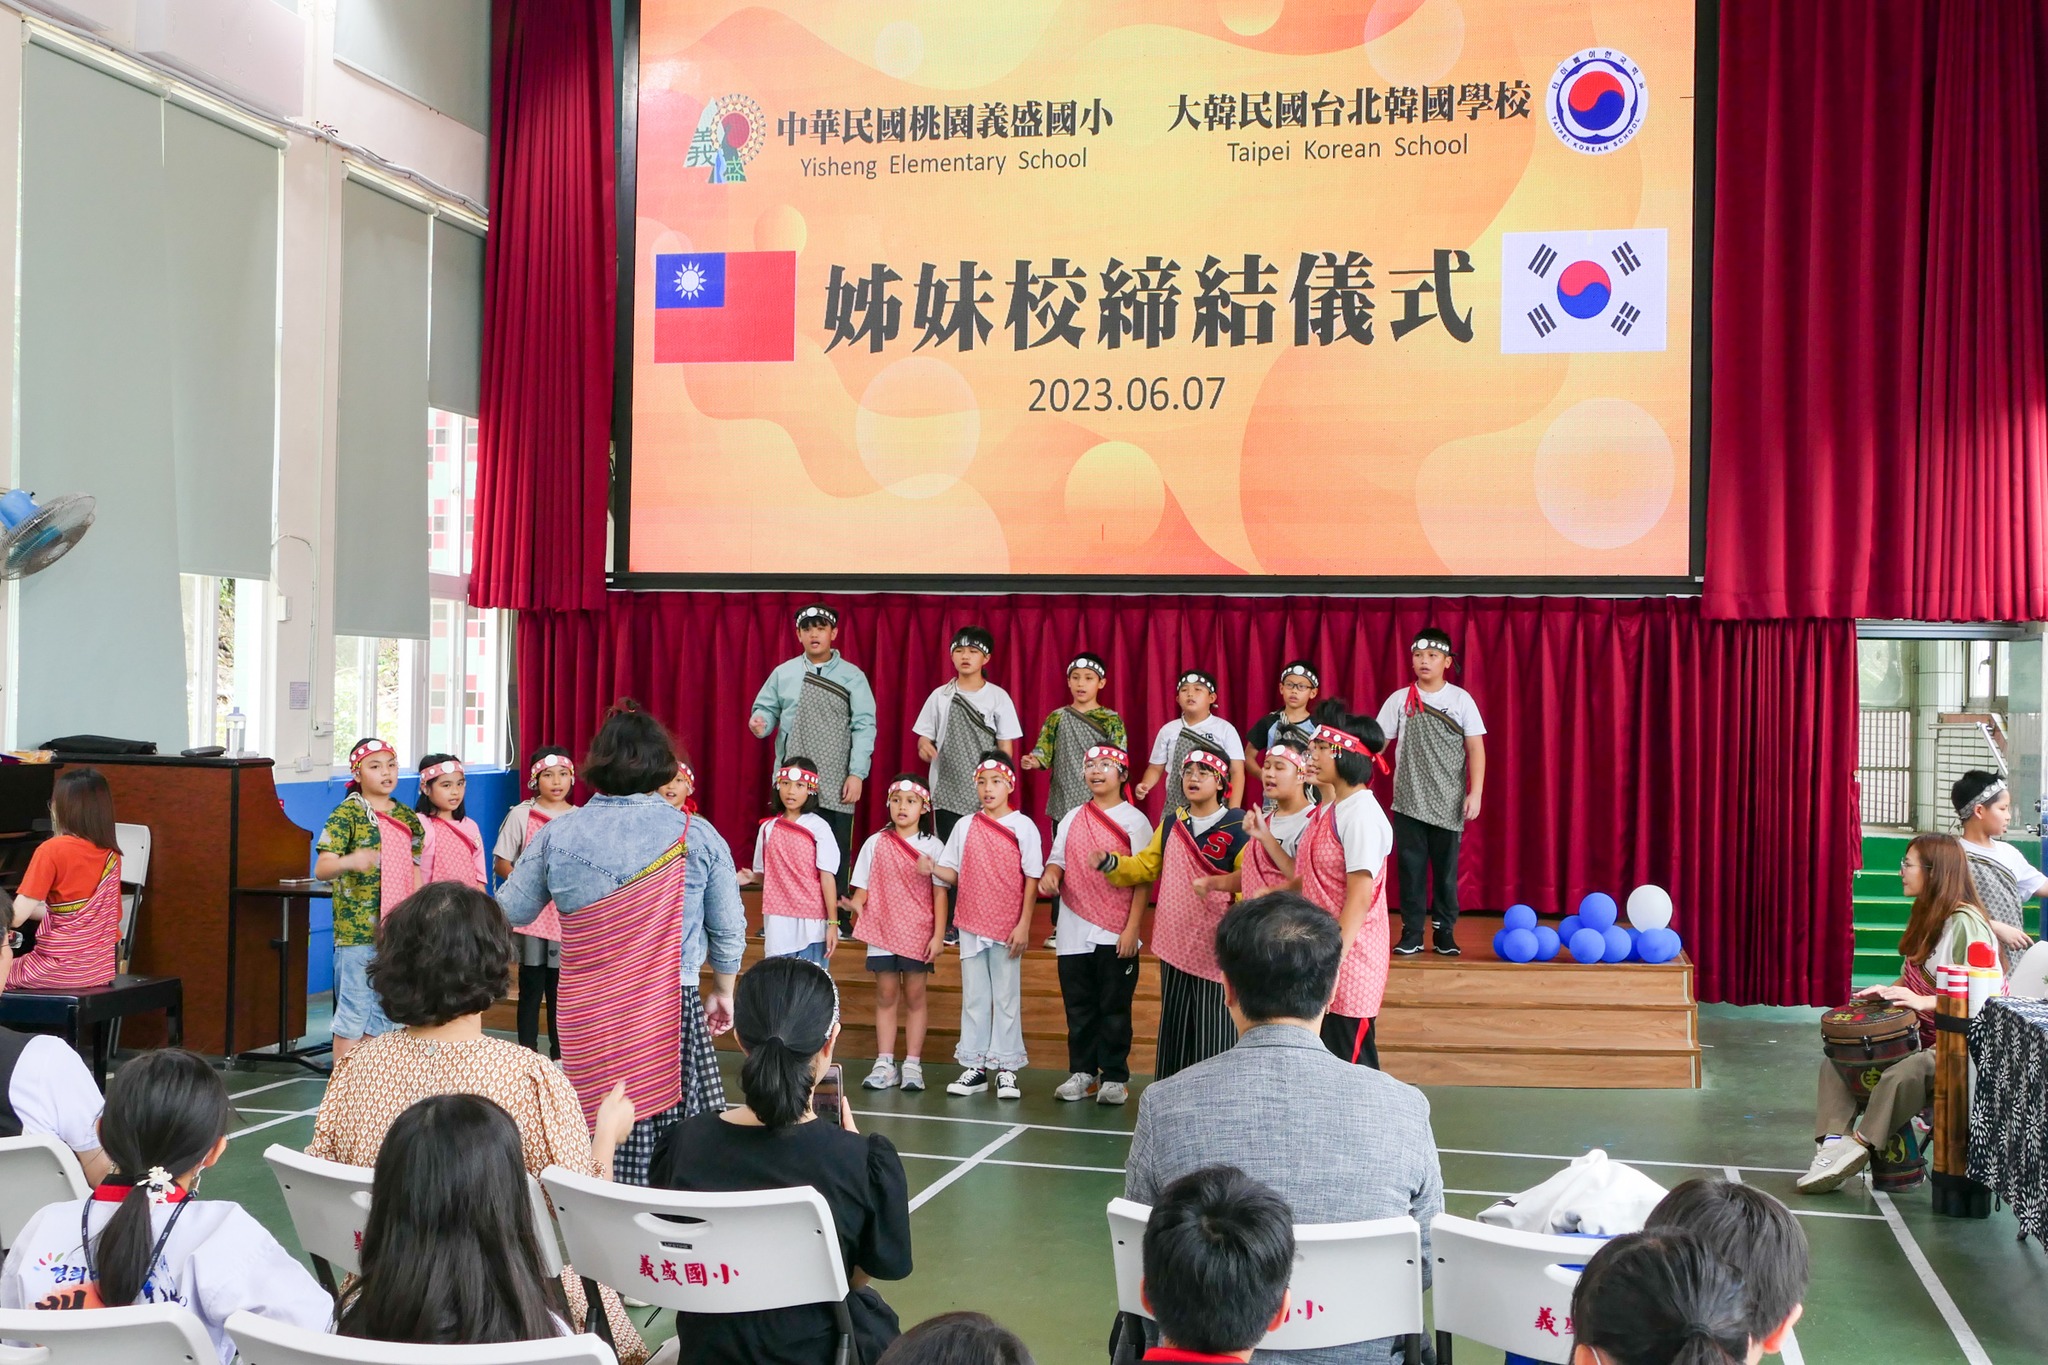 義盛國小 x 台北韓國學校 姊妹校締結儀式